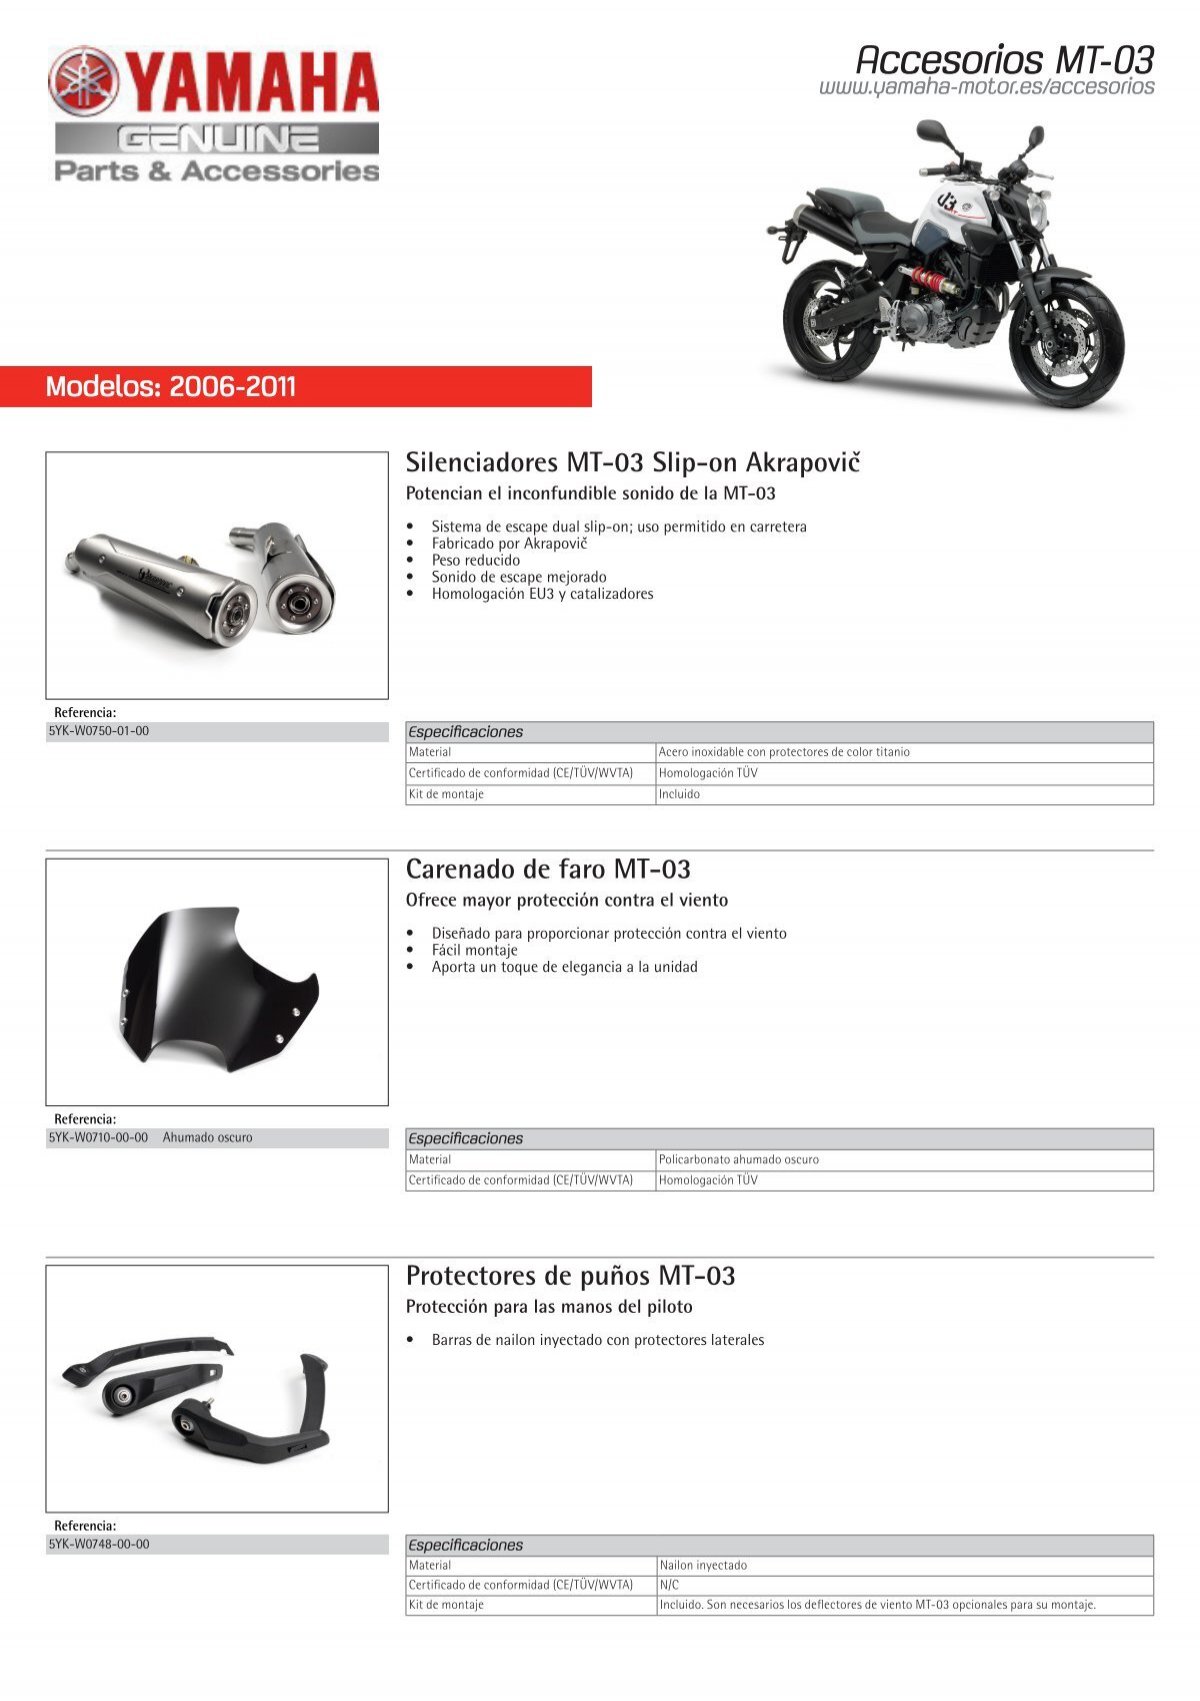 Boulons de moto pour YAMAHA et Suzuki GSXR, accessoires disponibles en 177  pièces pour M5 M6, YZF, R1, R25, R3, R6, R125, R15, MT03, MT07, MT10